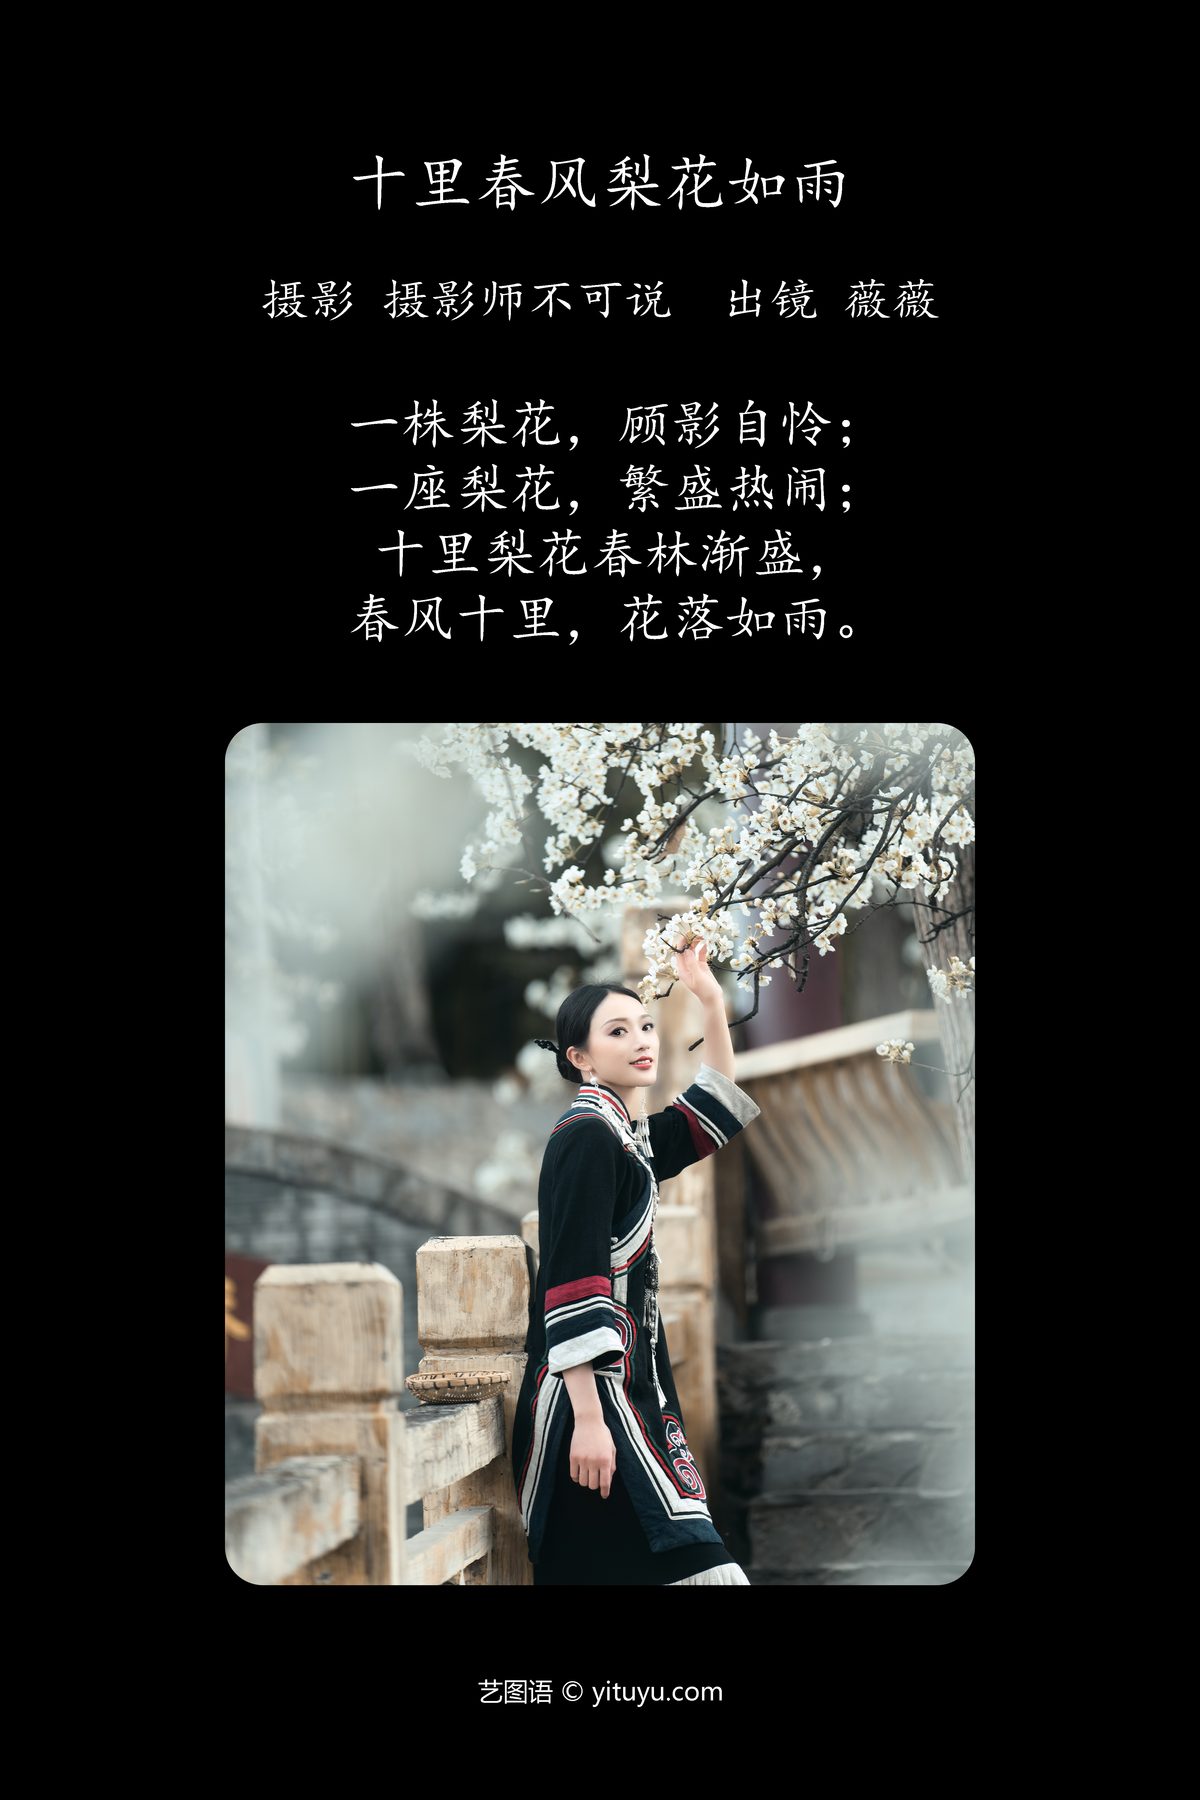 YiTuYu艺图语 Vol 4201 Wei Wei 0001 4717531381.jpg